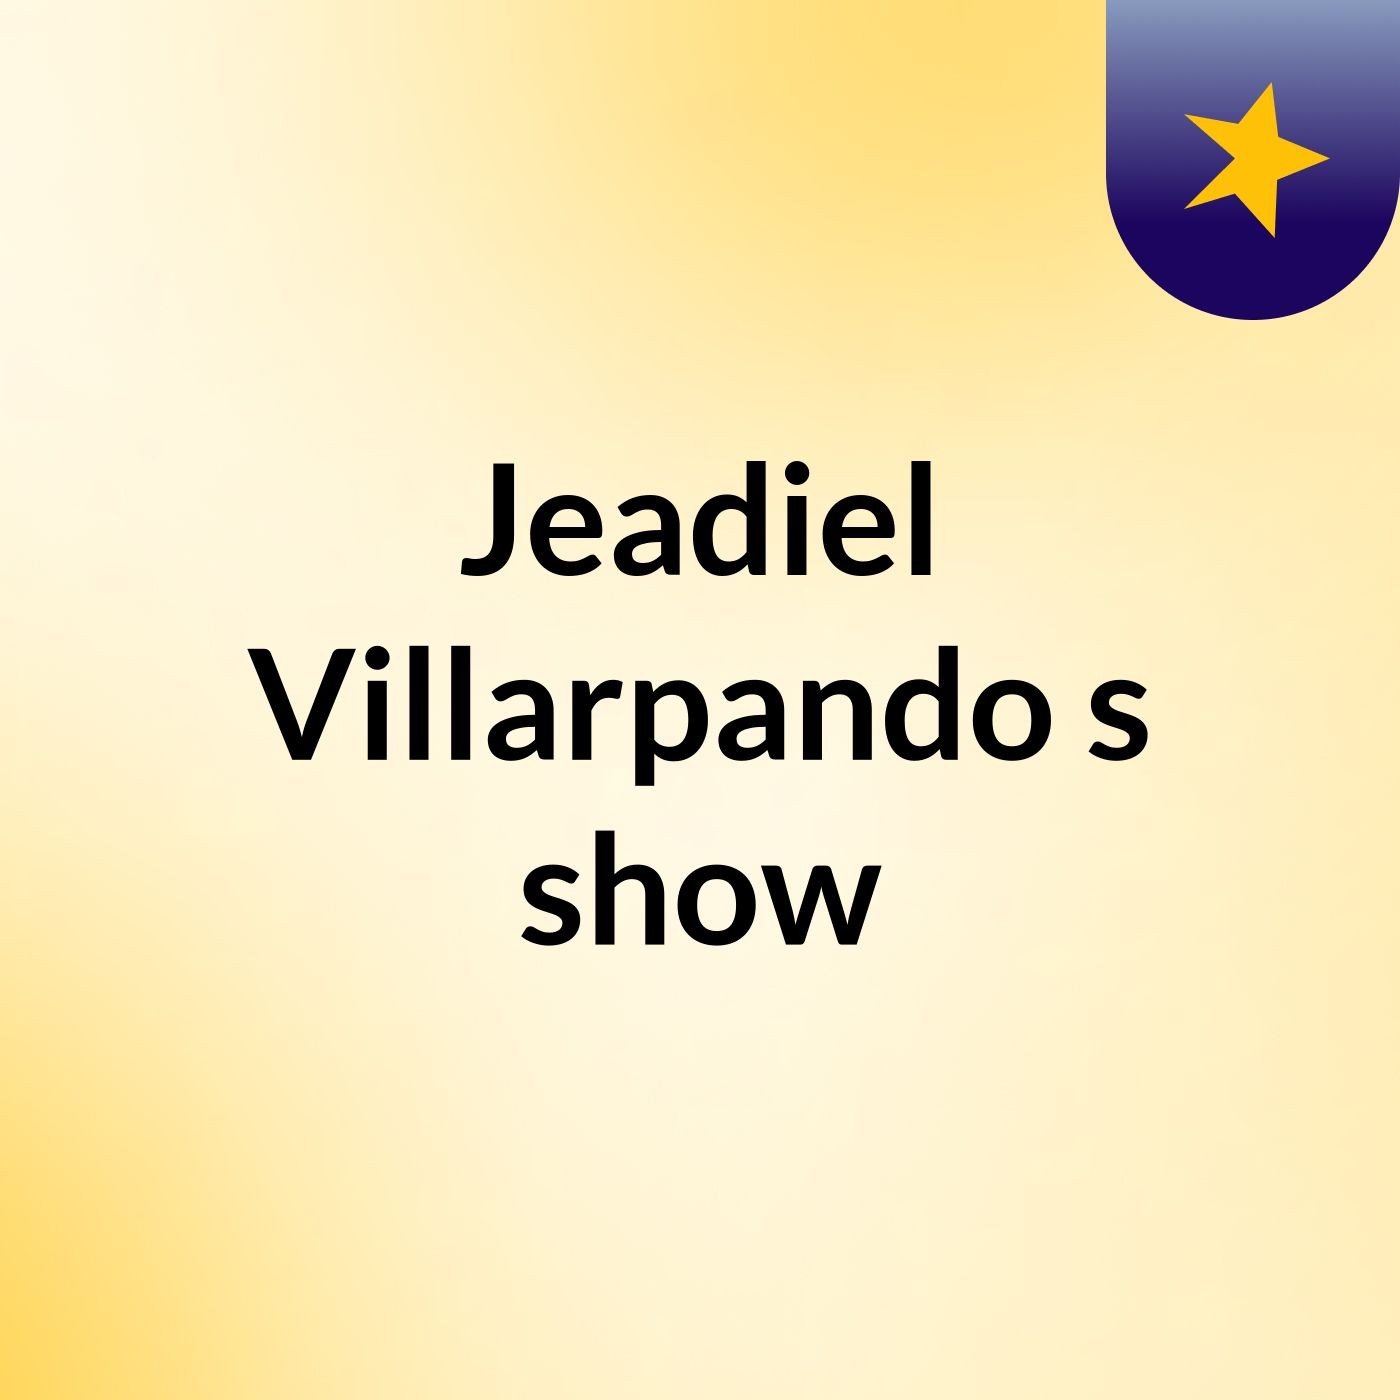 Jeadiel Villarpando's show